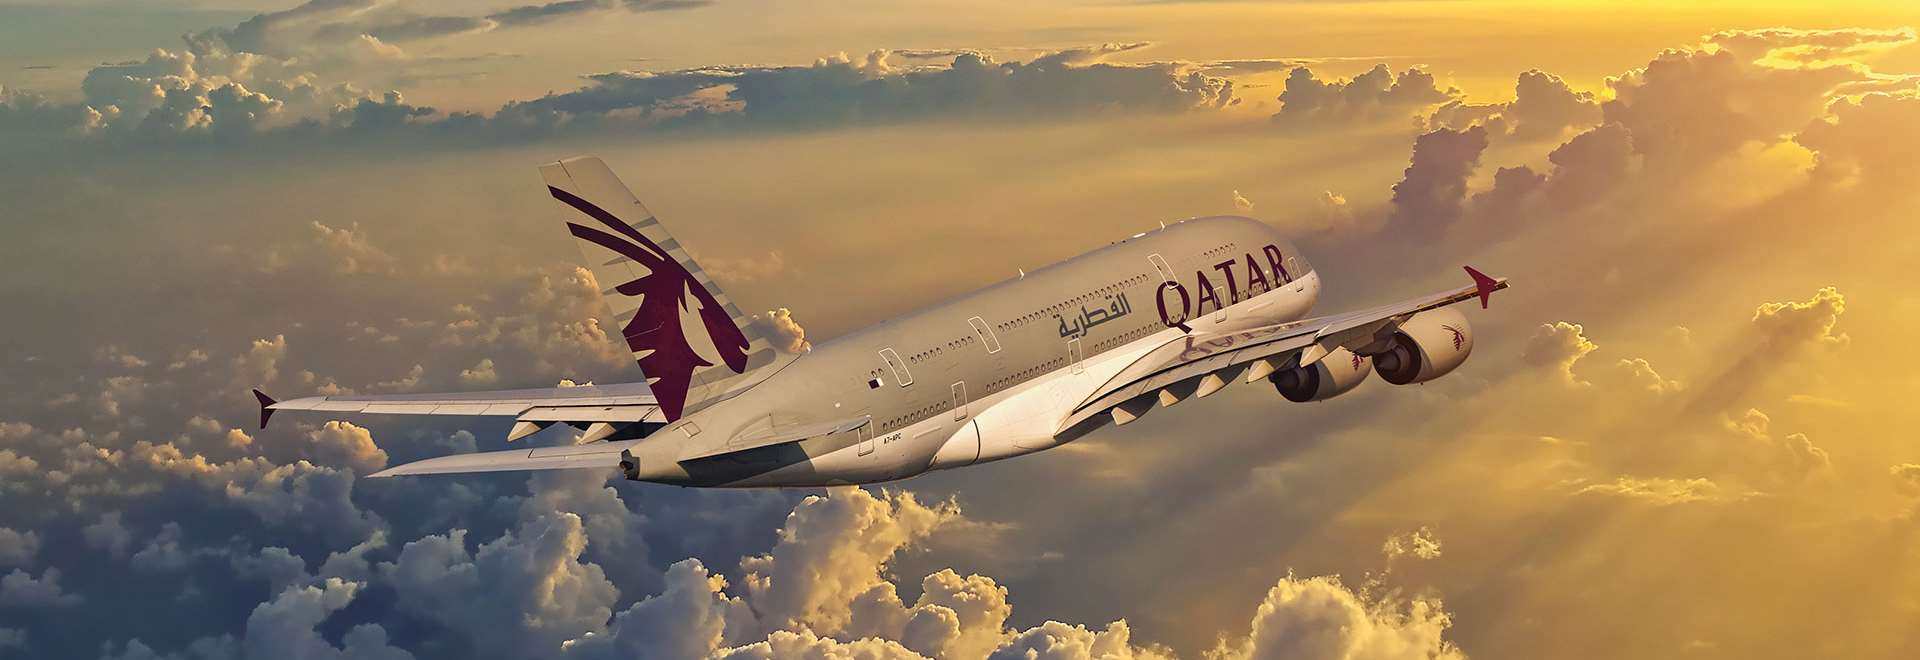 Qatar Airways flights | Netflights